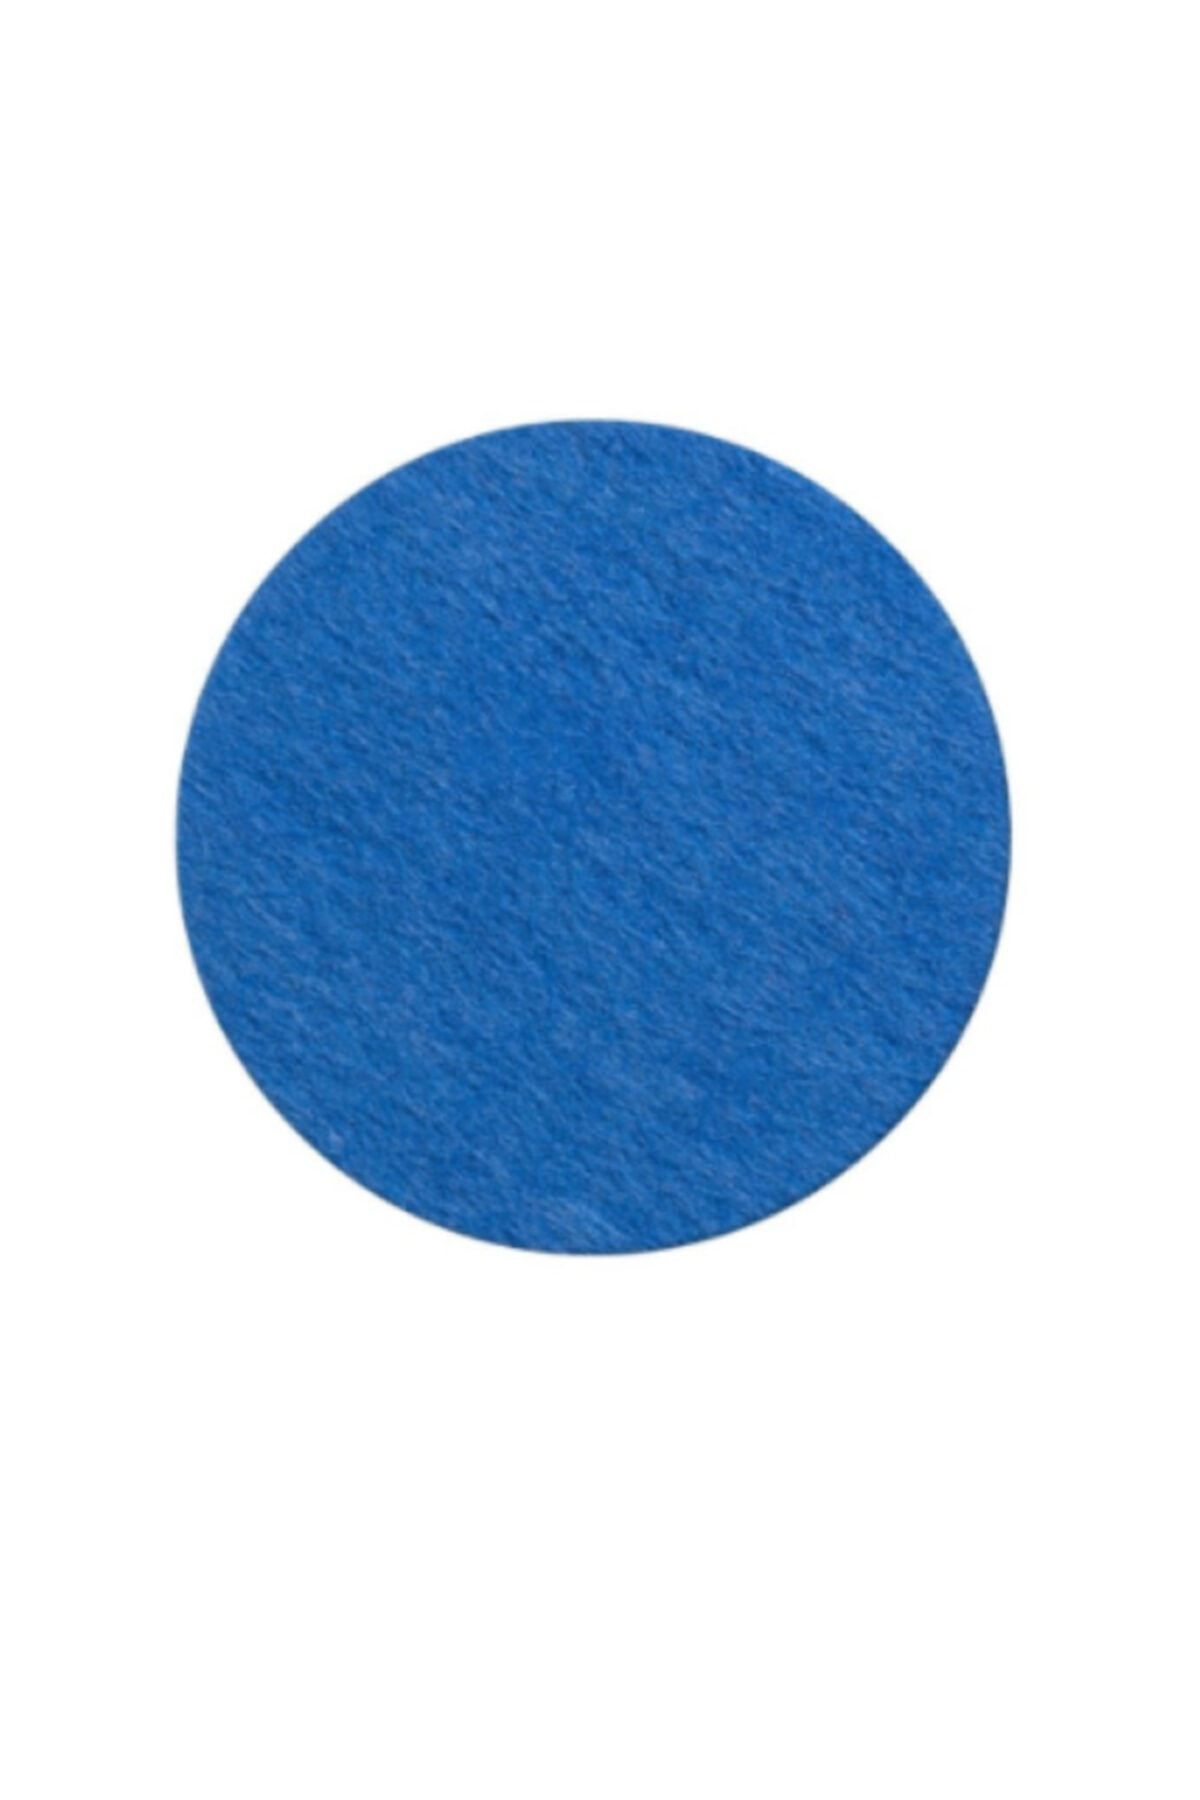 GLASSY Art Keçe Bardak Altlığı - Açık Mavi